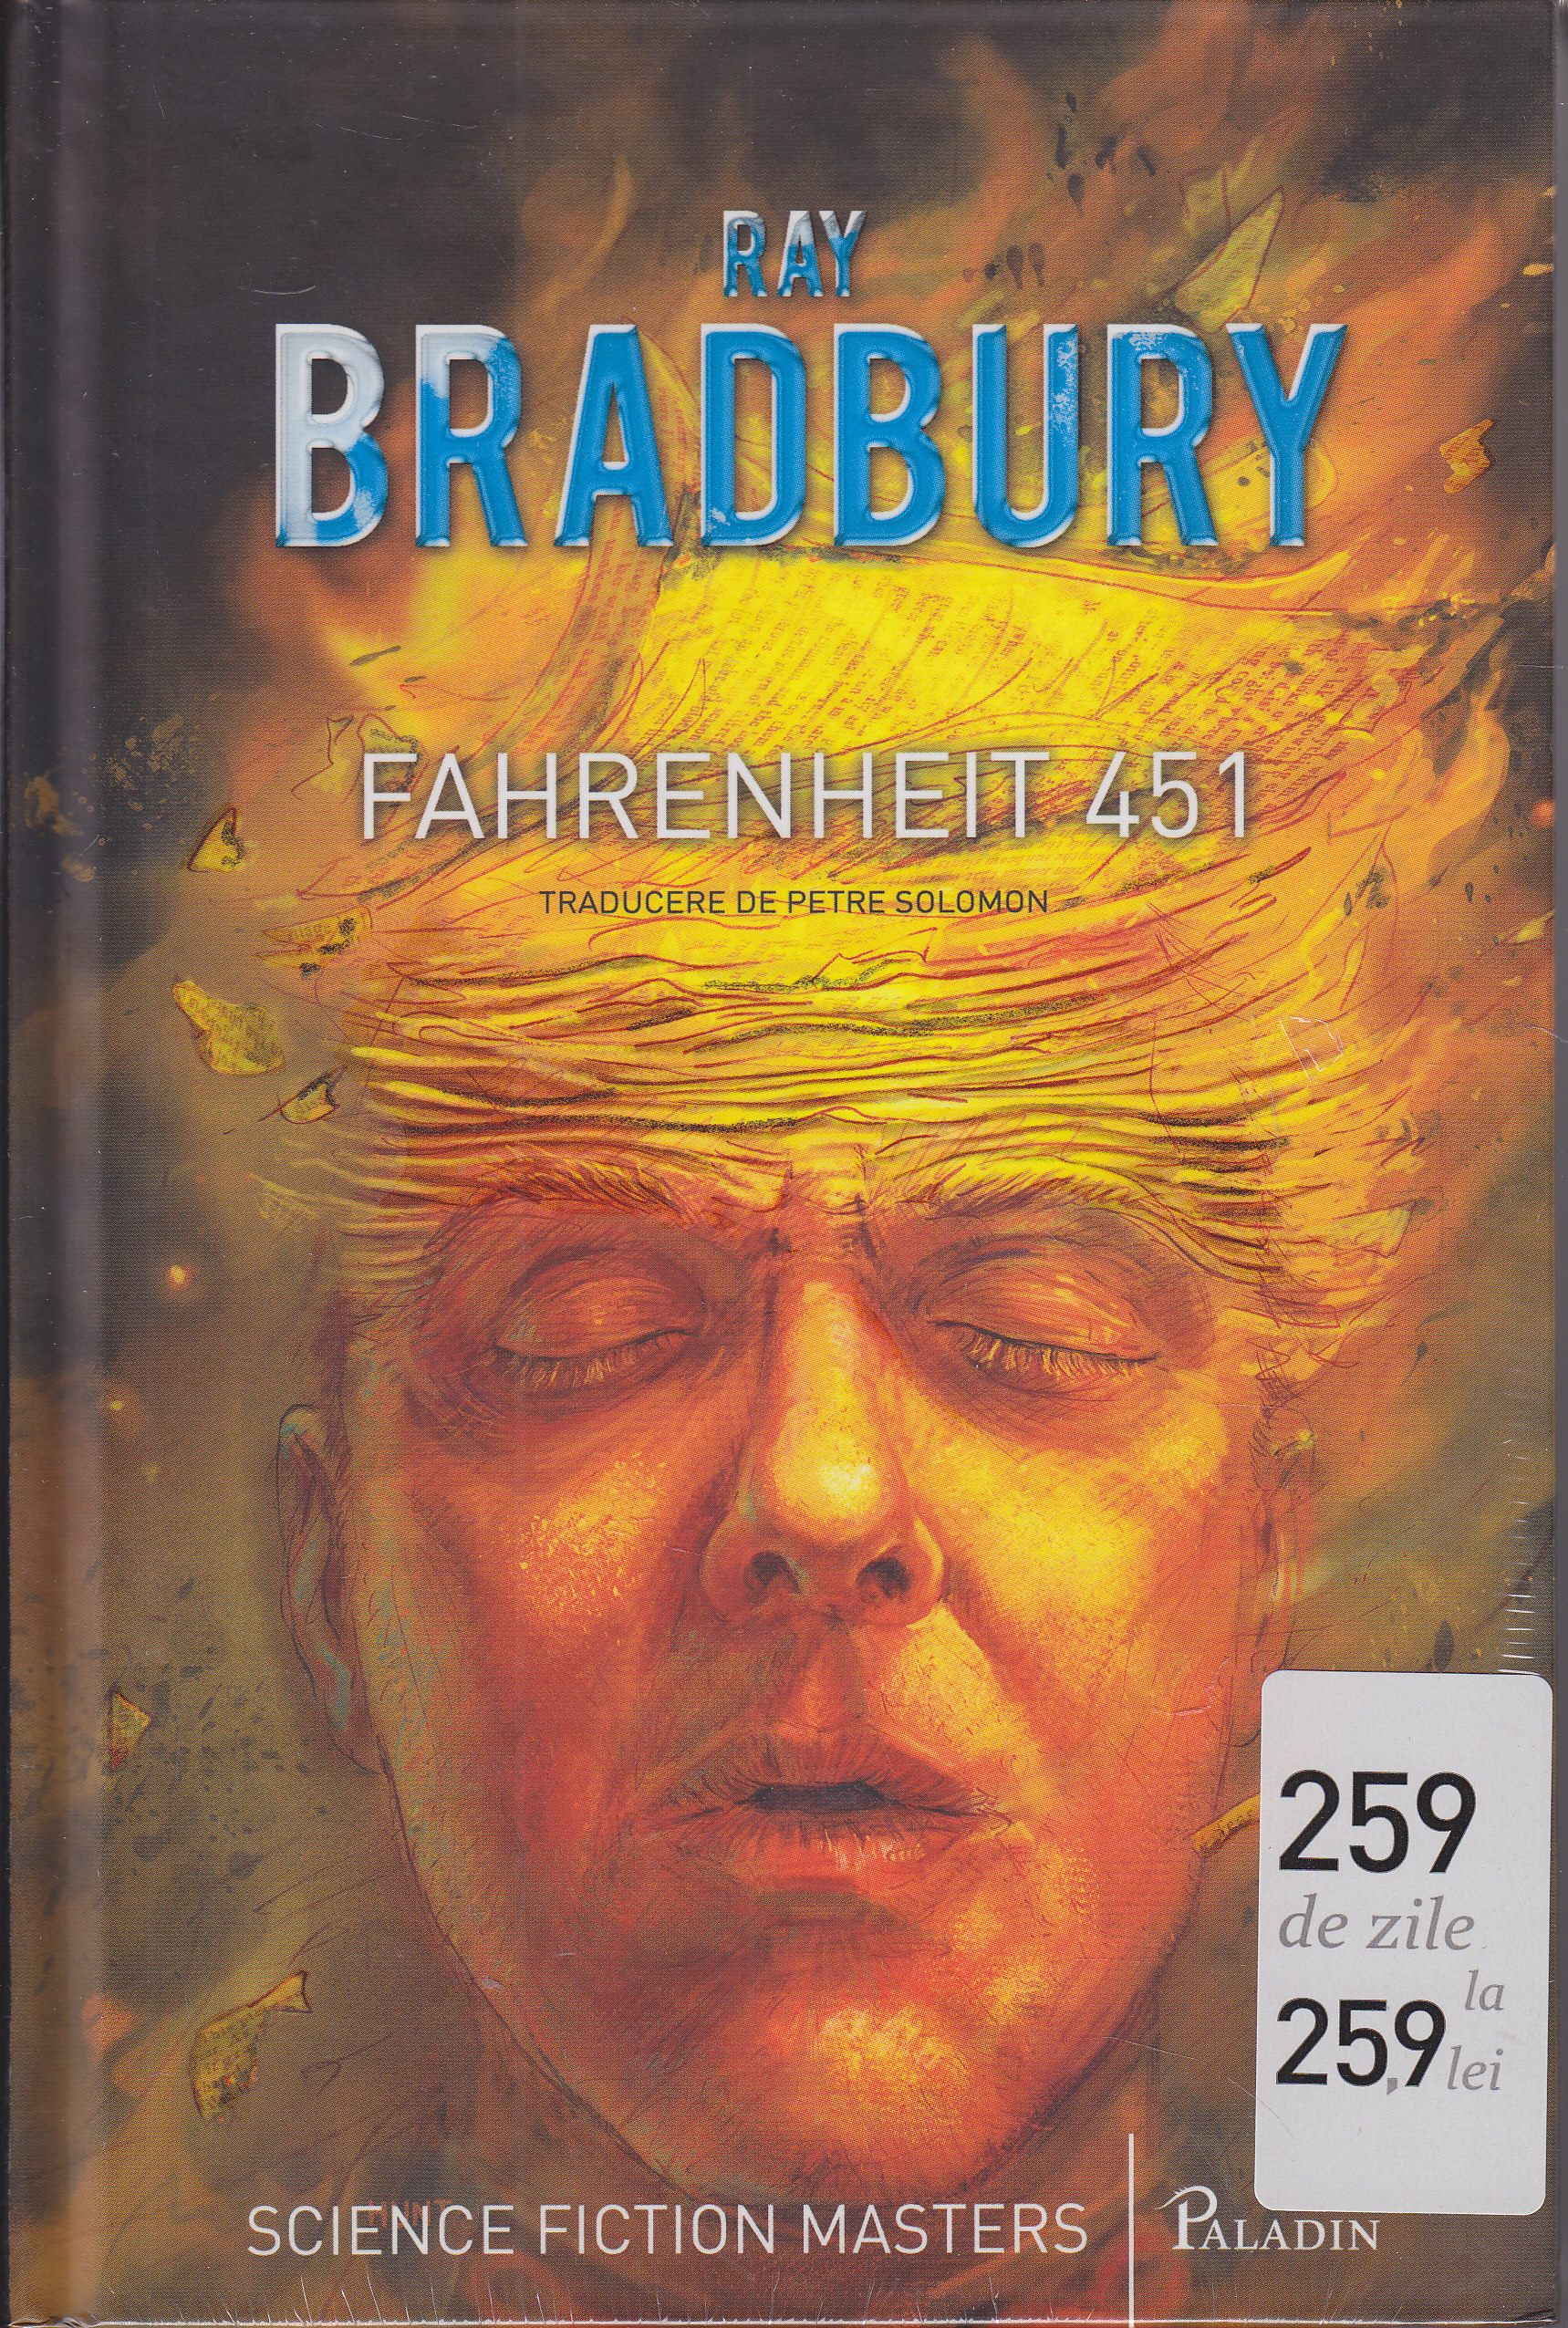 Fahrenheith 451 - Ray Bradbury